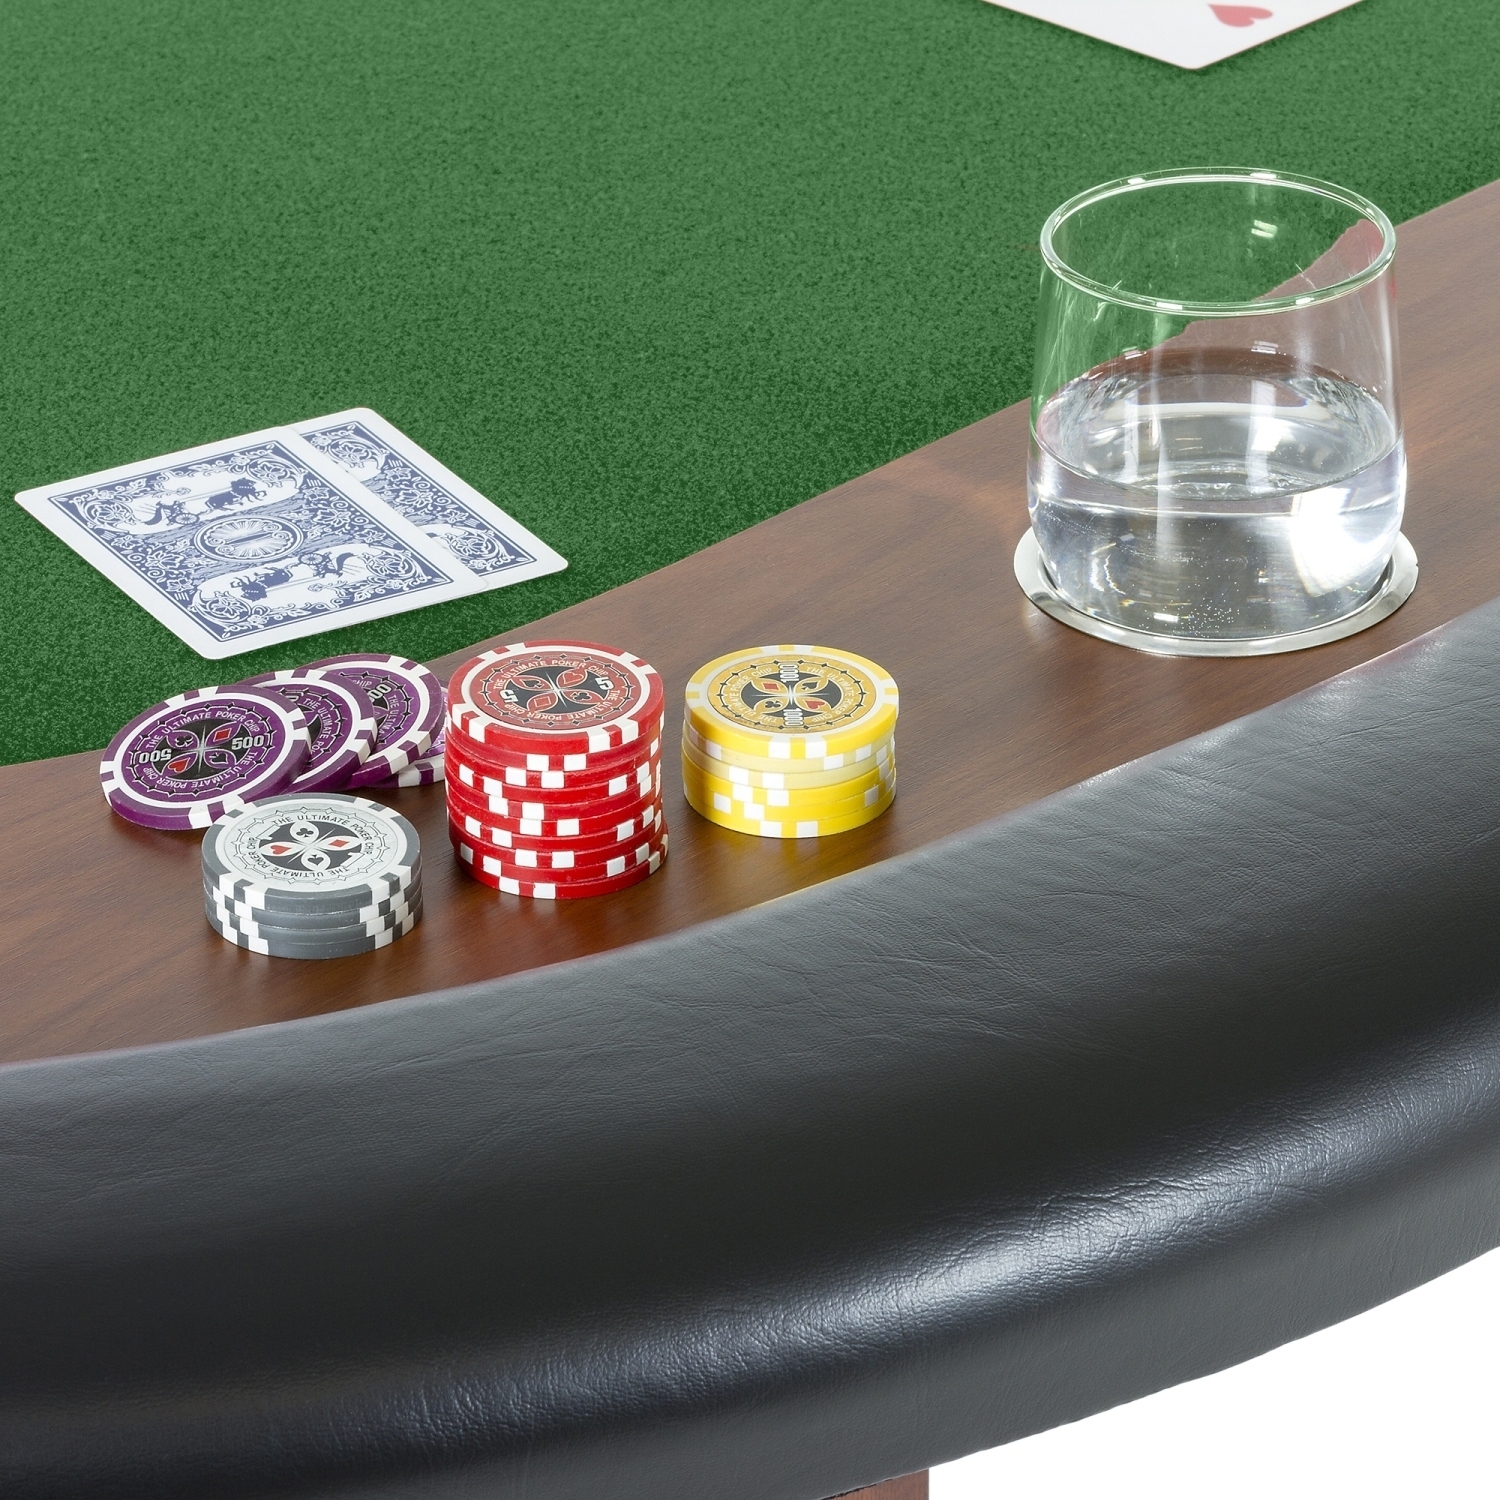 Poker Tisch